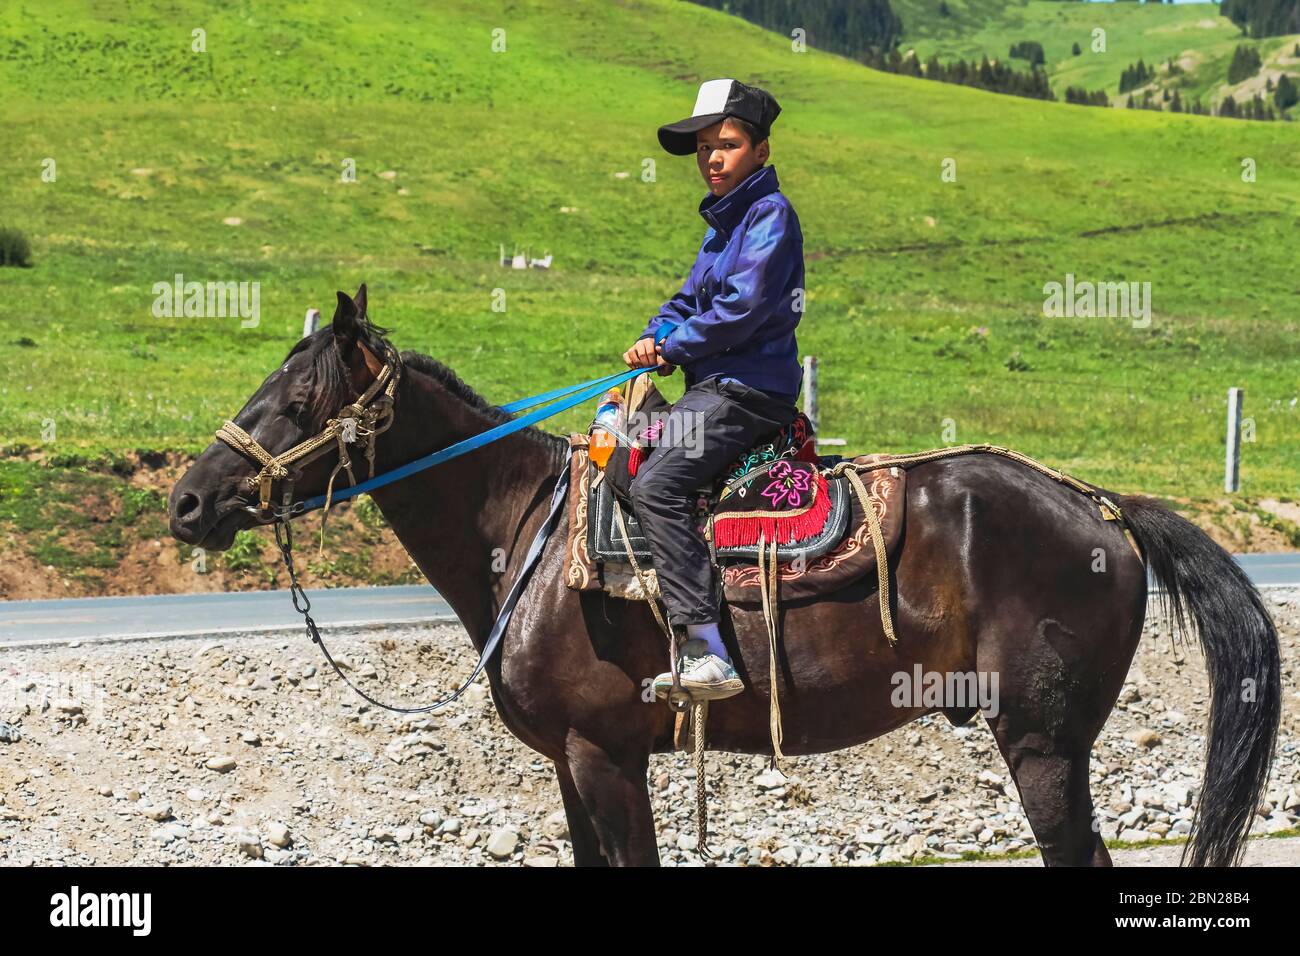 Province de Xinjiang, Chine - 11 juillet 2014 : un fermier uyghur sur son cheval se tourne pour une photo Banque D'Images